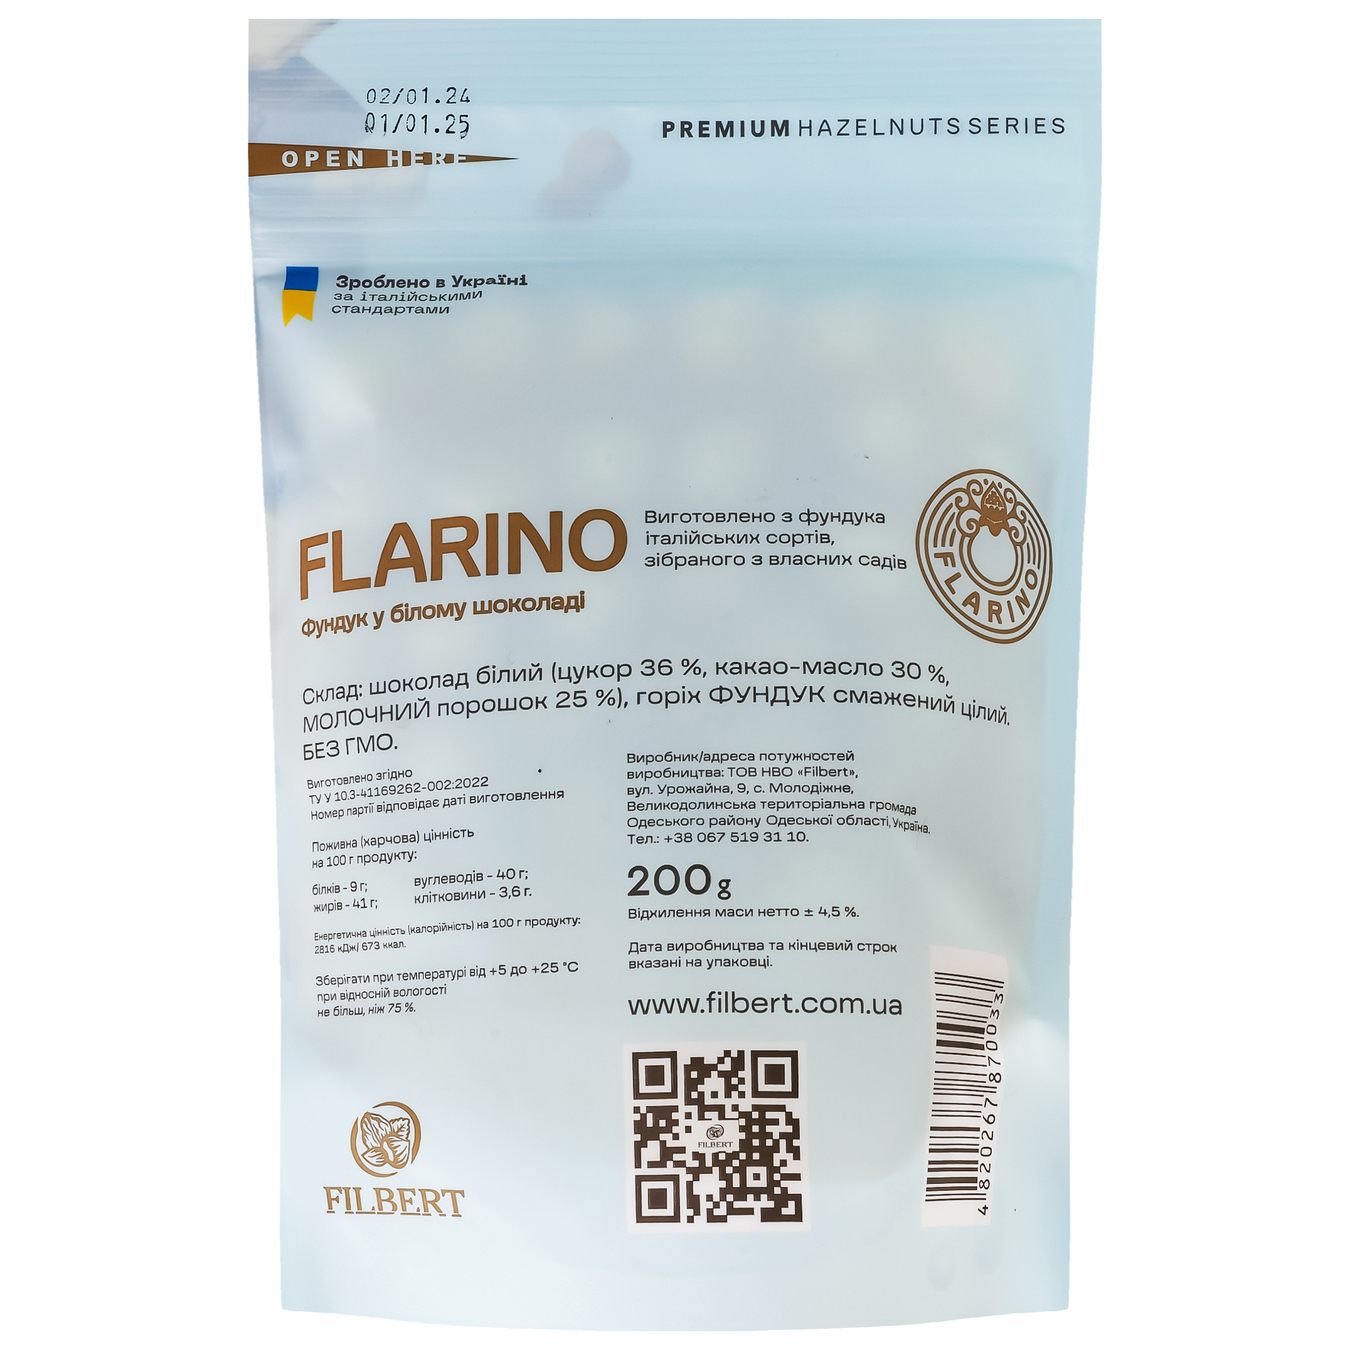 Flarino hazelnut in white chocolate 200g 3